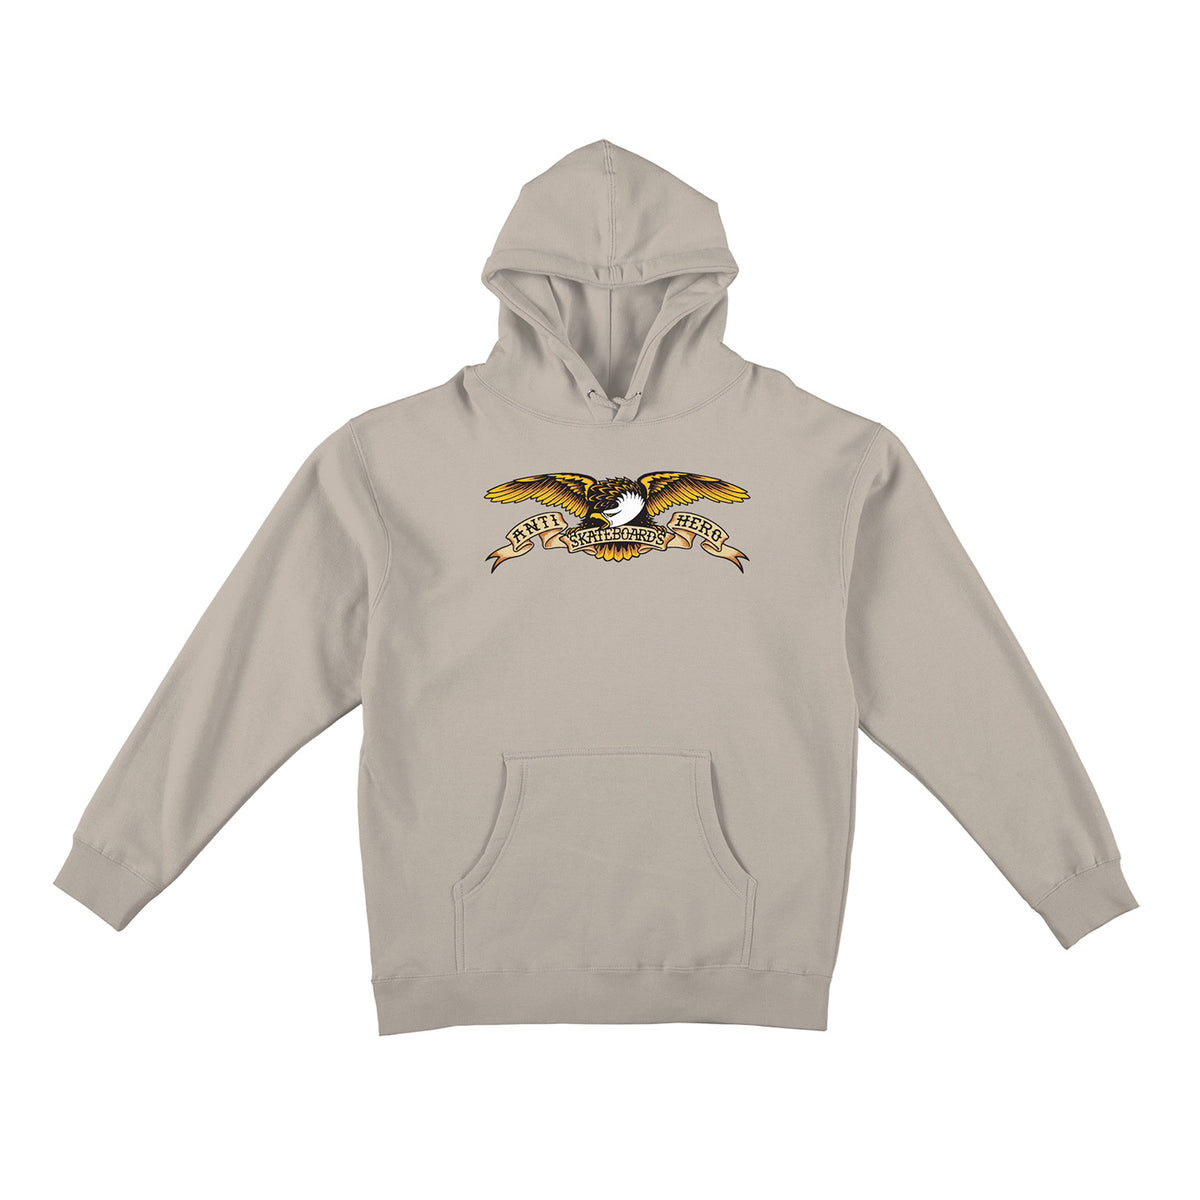 Antihero Eagle Hooded Sweatshirt